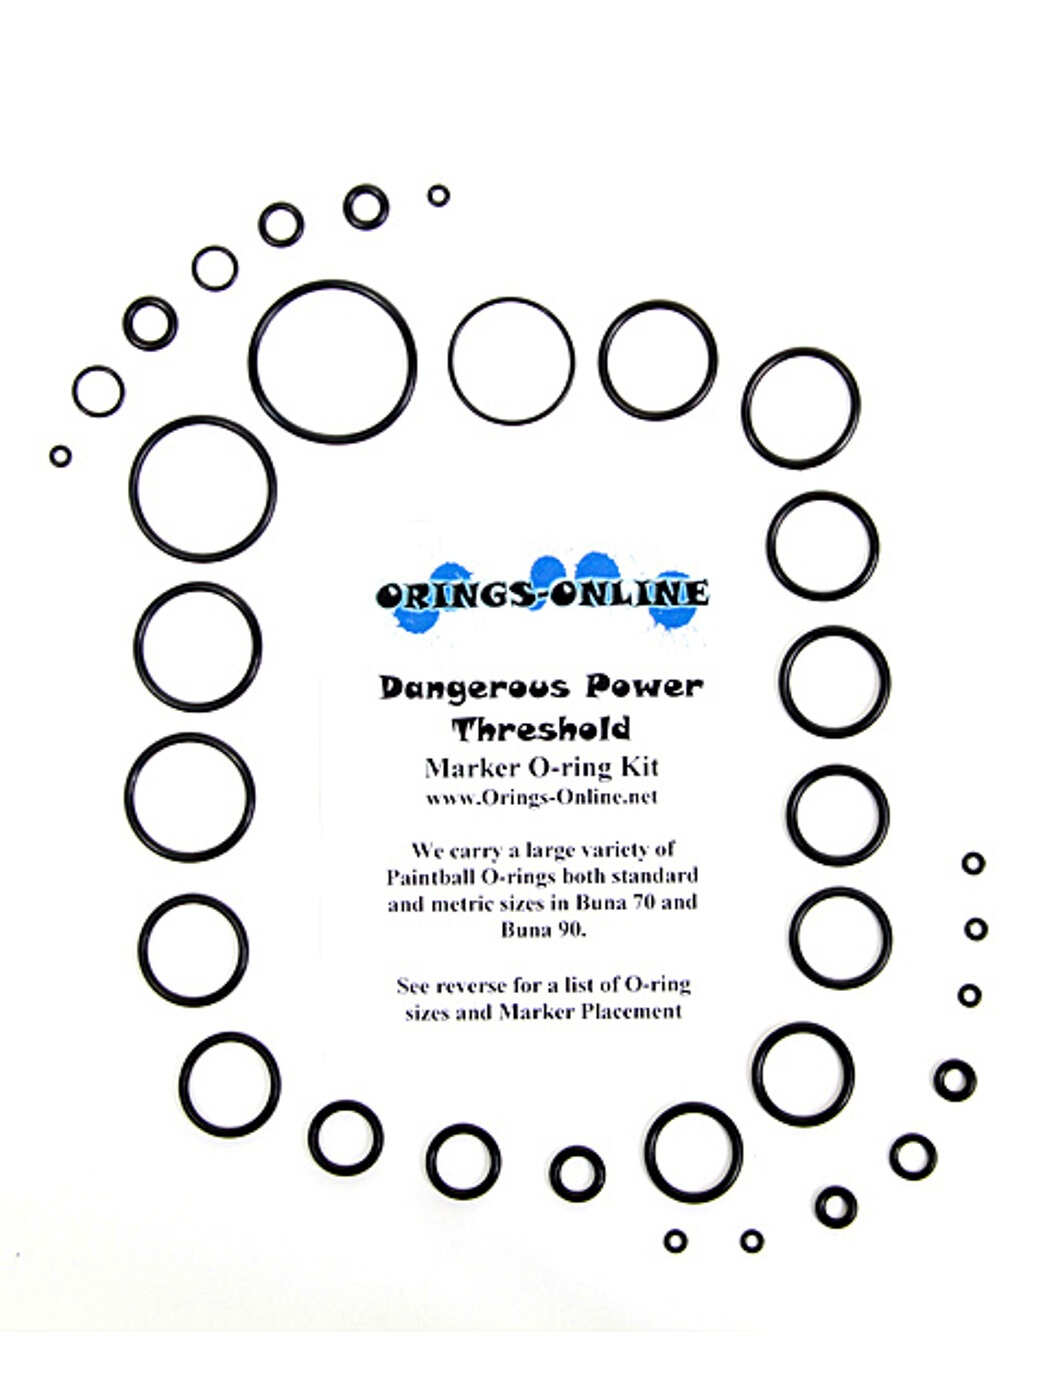 Dangerous Power - Threshold Marker O-ring Kit